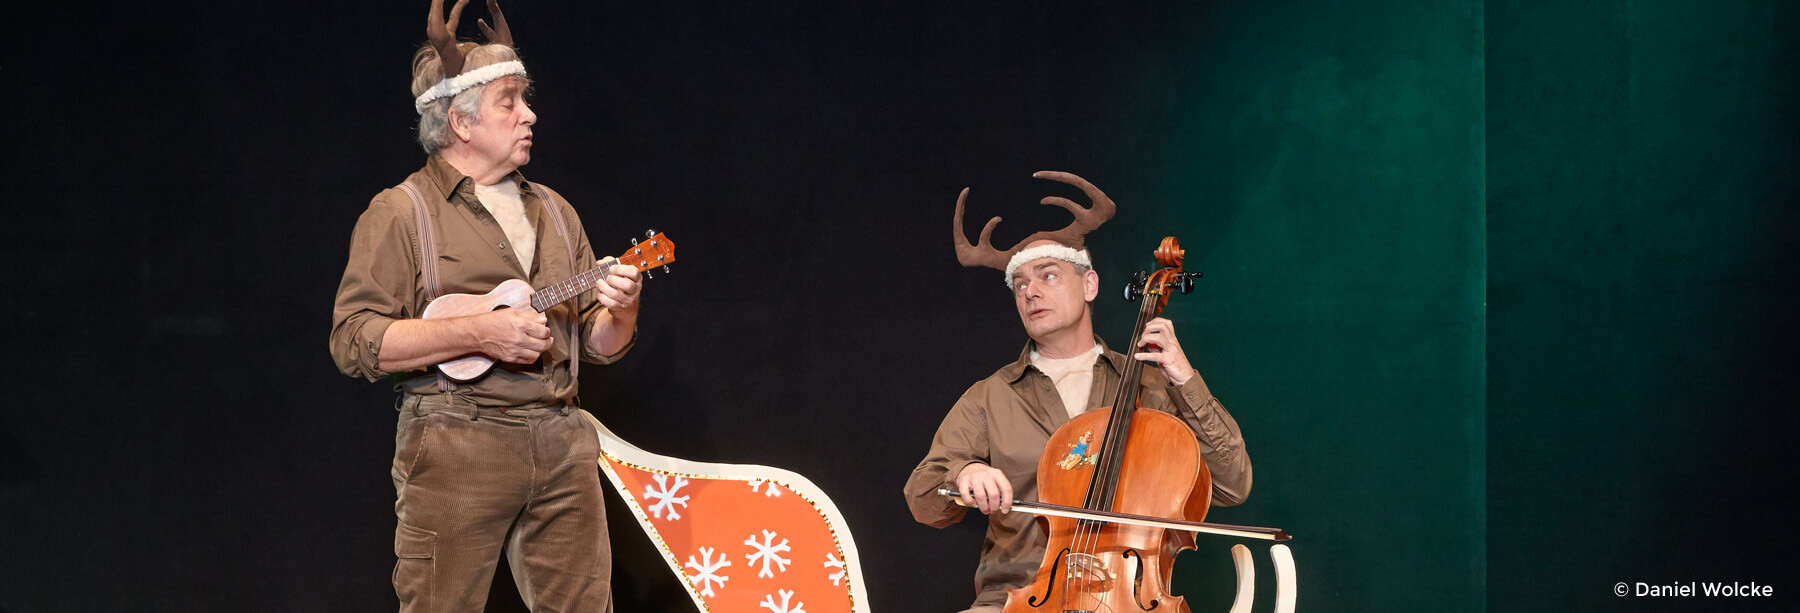 Peter Markhoff und Uwe Schade spielen Ukulele und Cello.